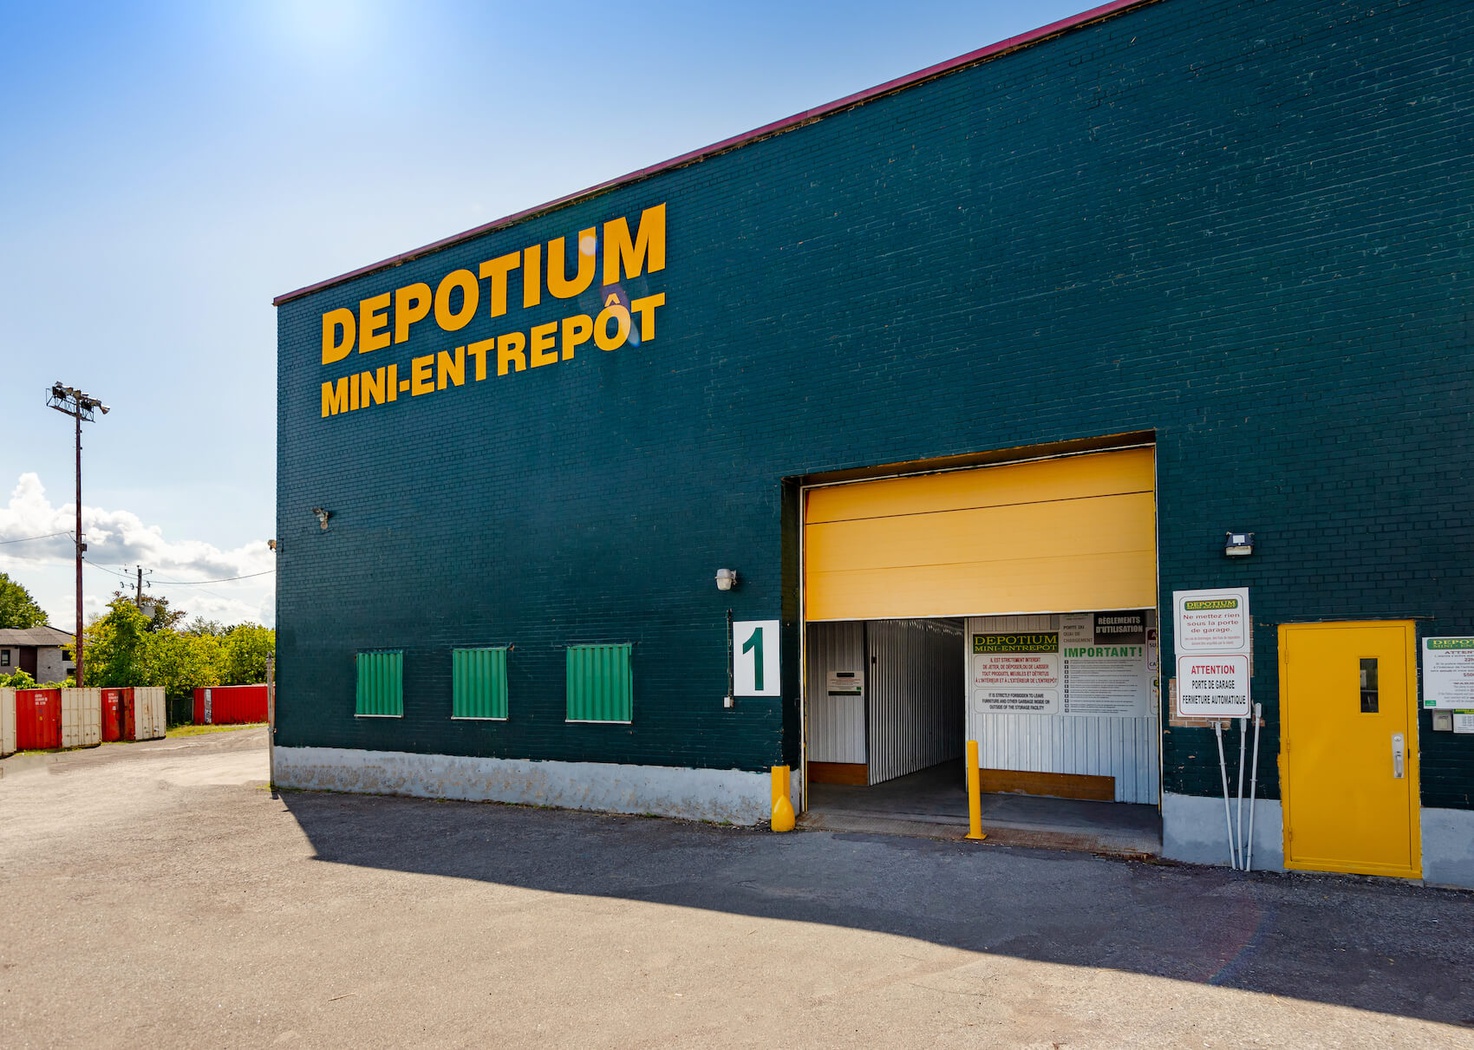 Depotium Mini Entrepôt & VR - Longueuil St-Hubert (450)900-0733